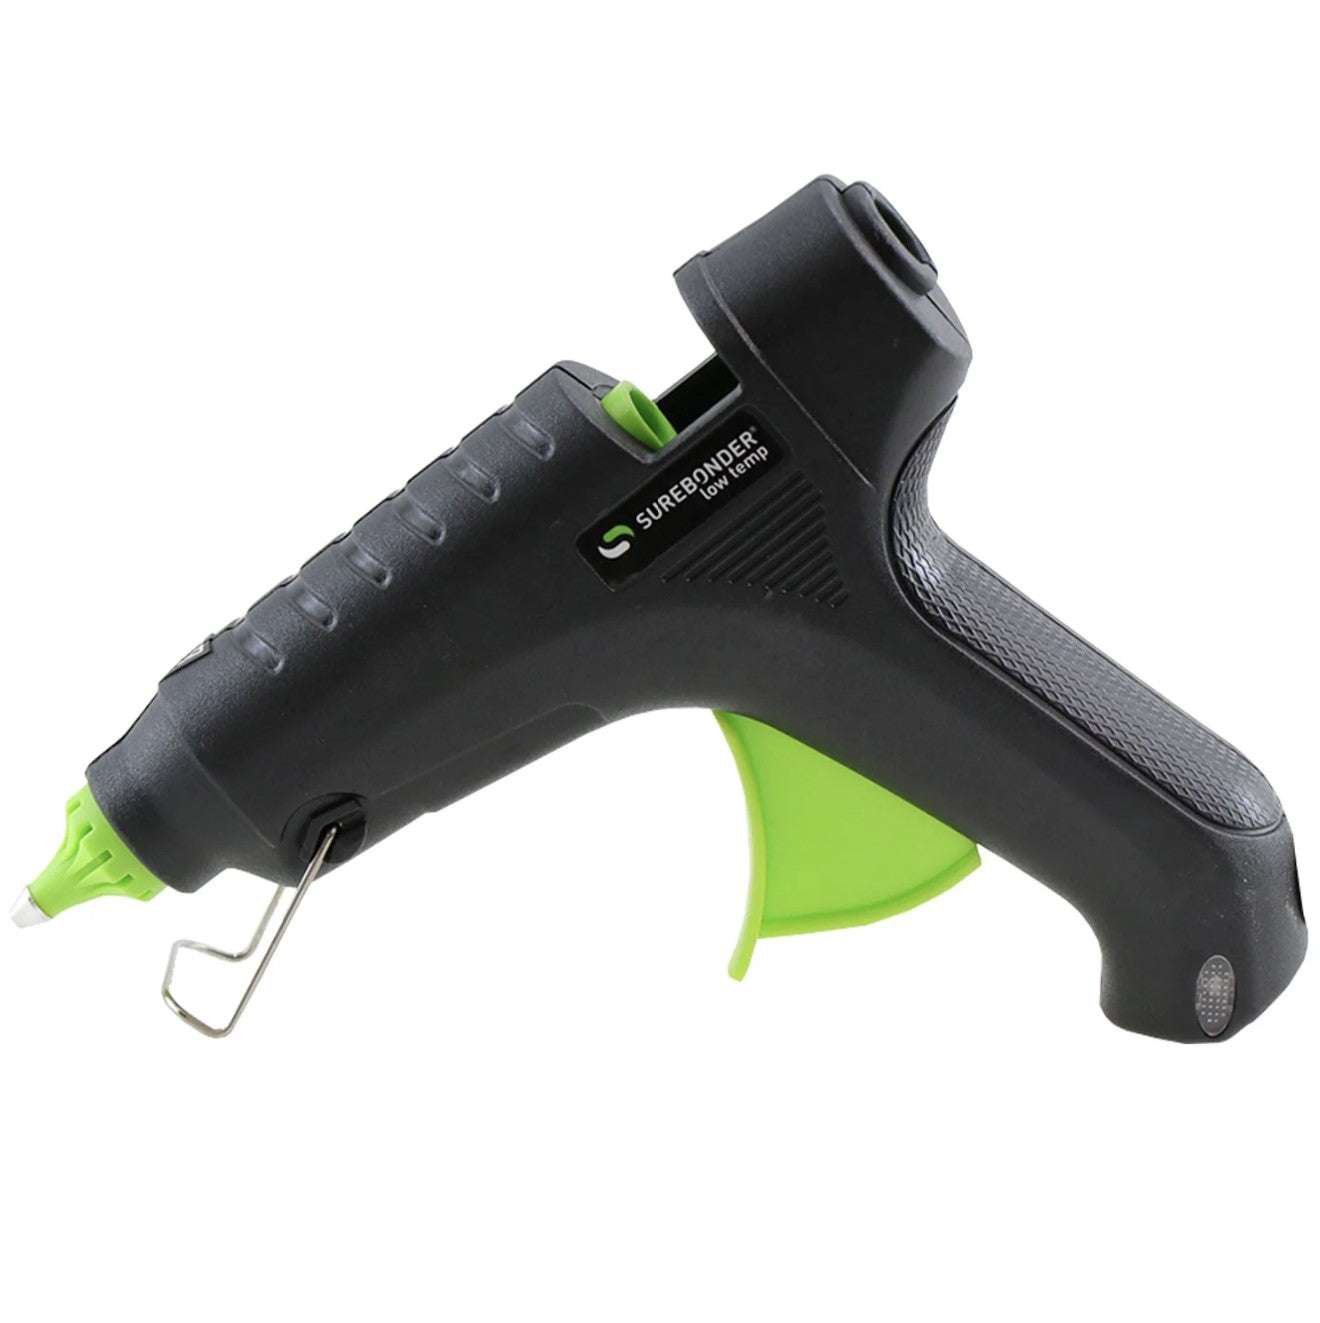 Full Size Low Temp Glue Gun, 40 Watt (Ref. L-270), Essentials Series by Surebonder®